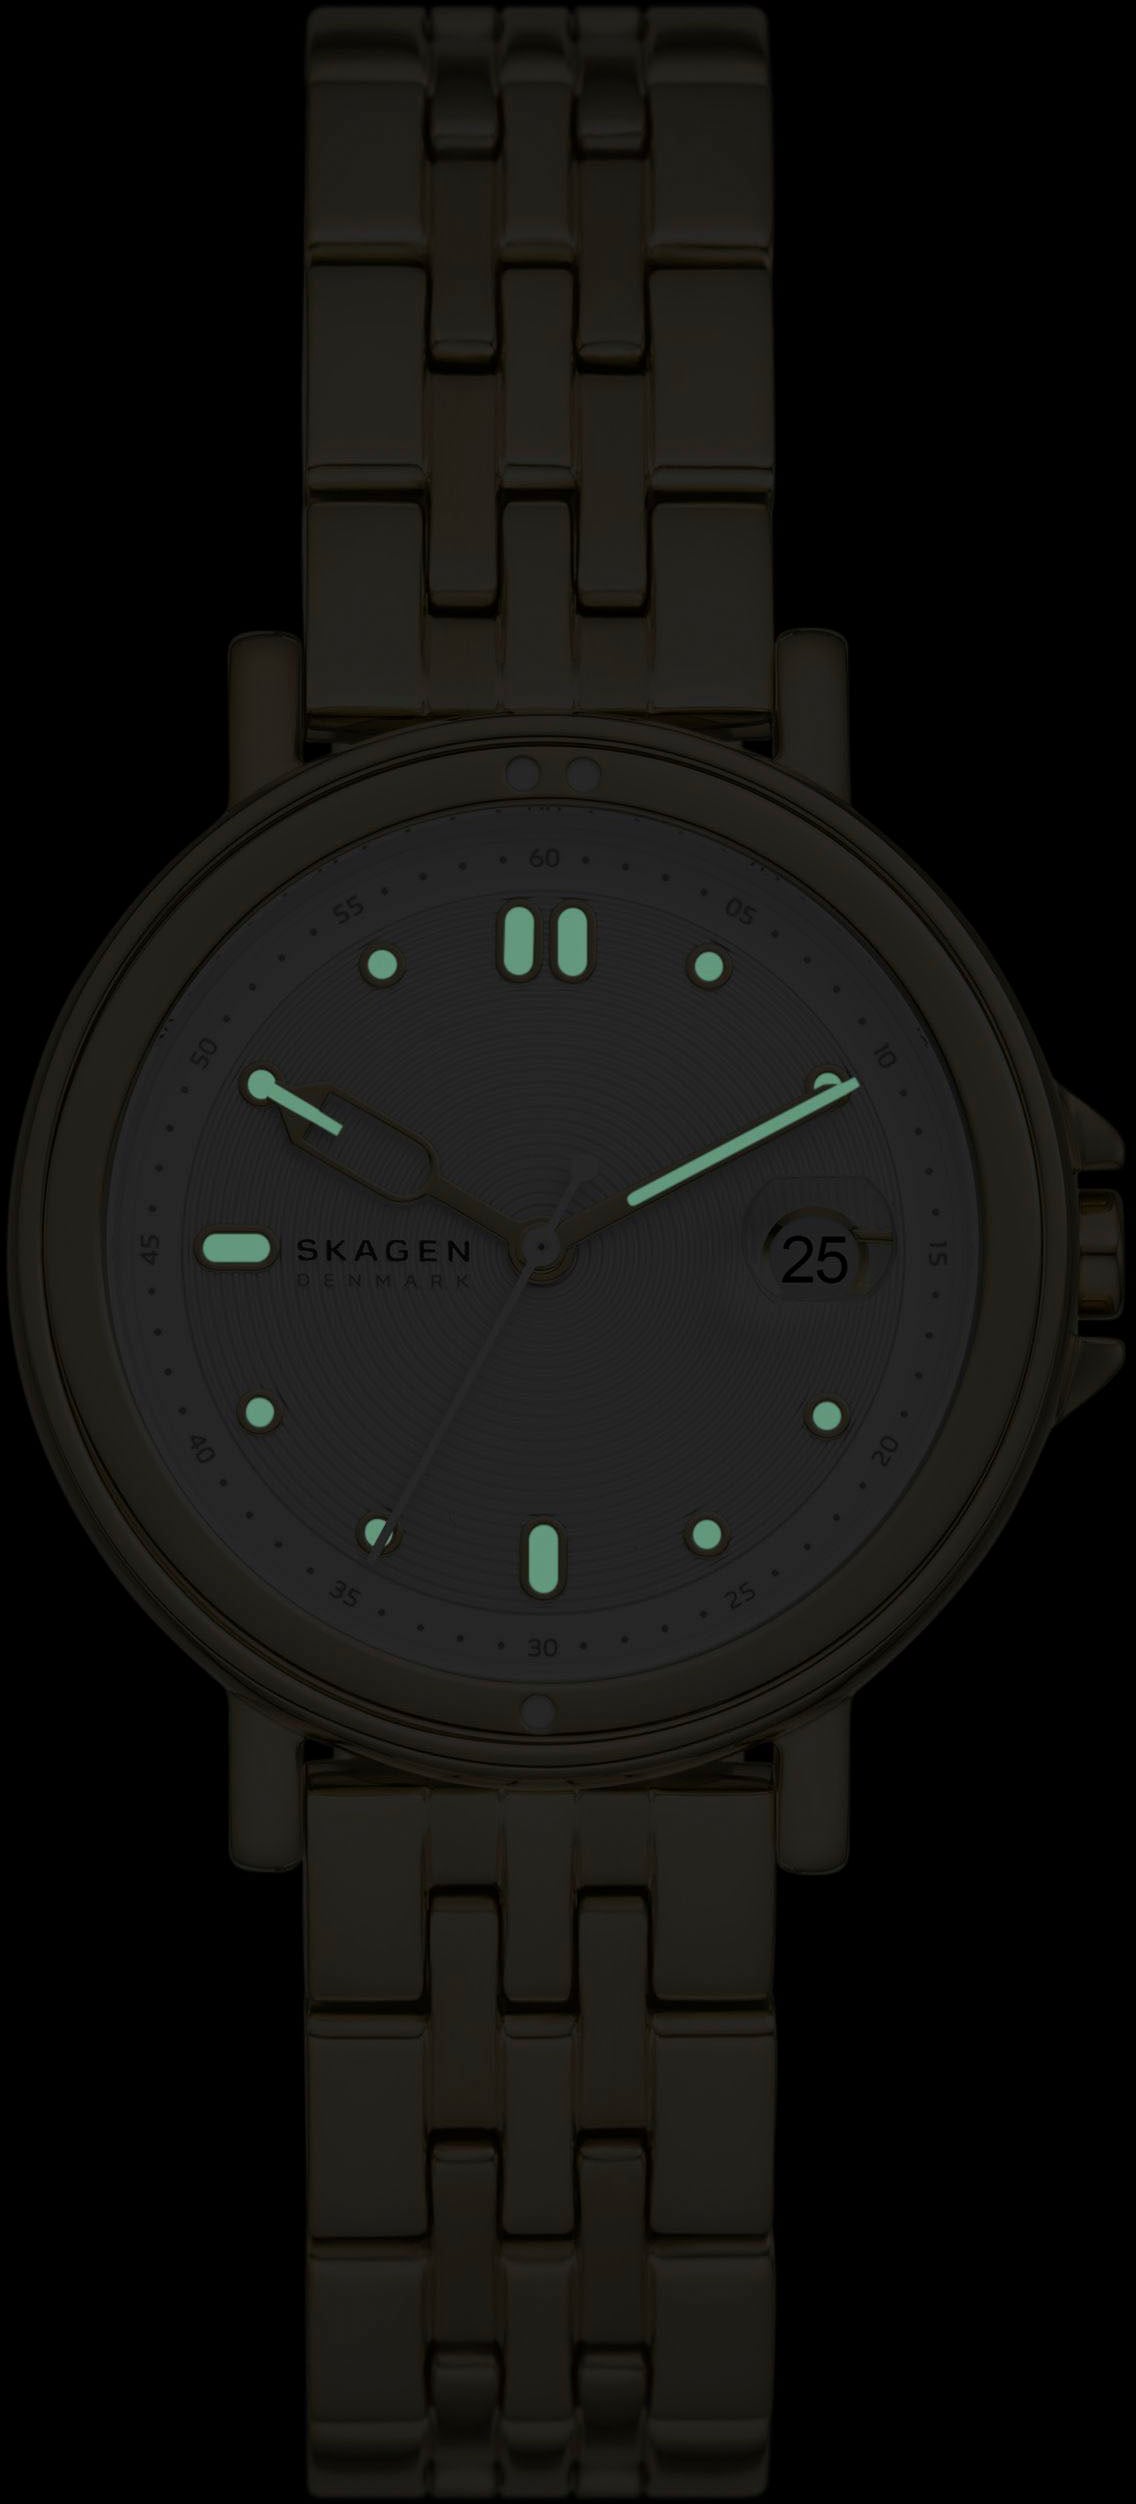 Skagen Quarzuhr »SIGNATURE LILLE SPORT«, Armbanduhr, Damenuhr, Datum, analog